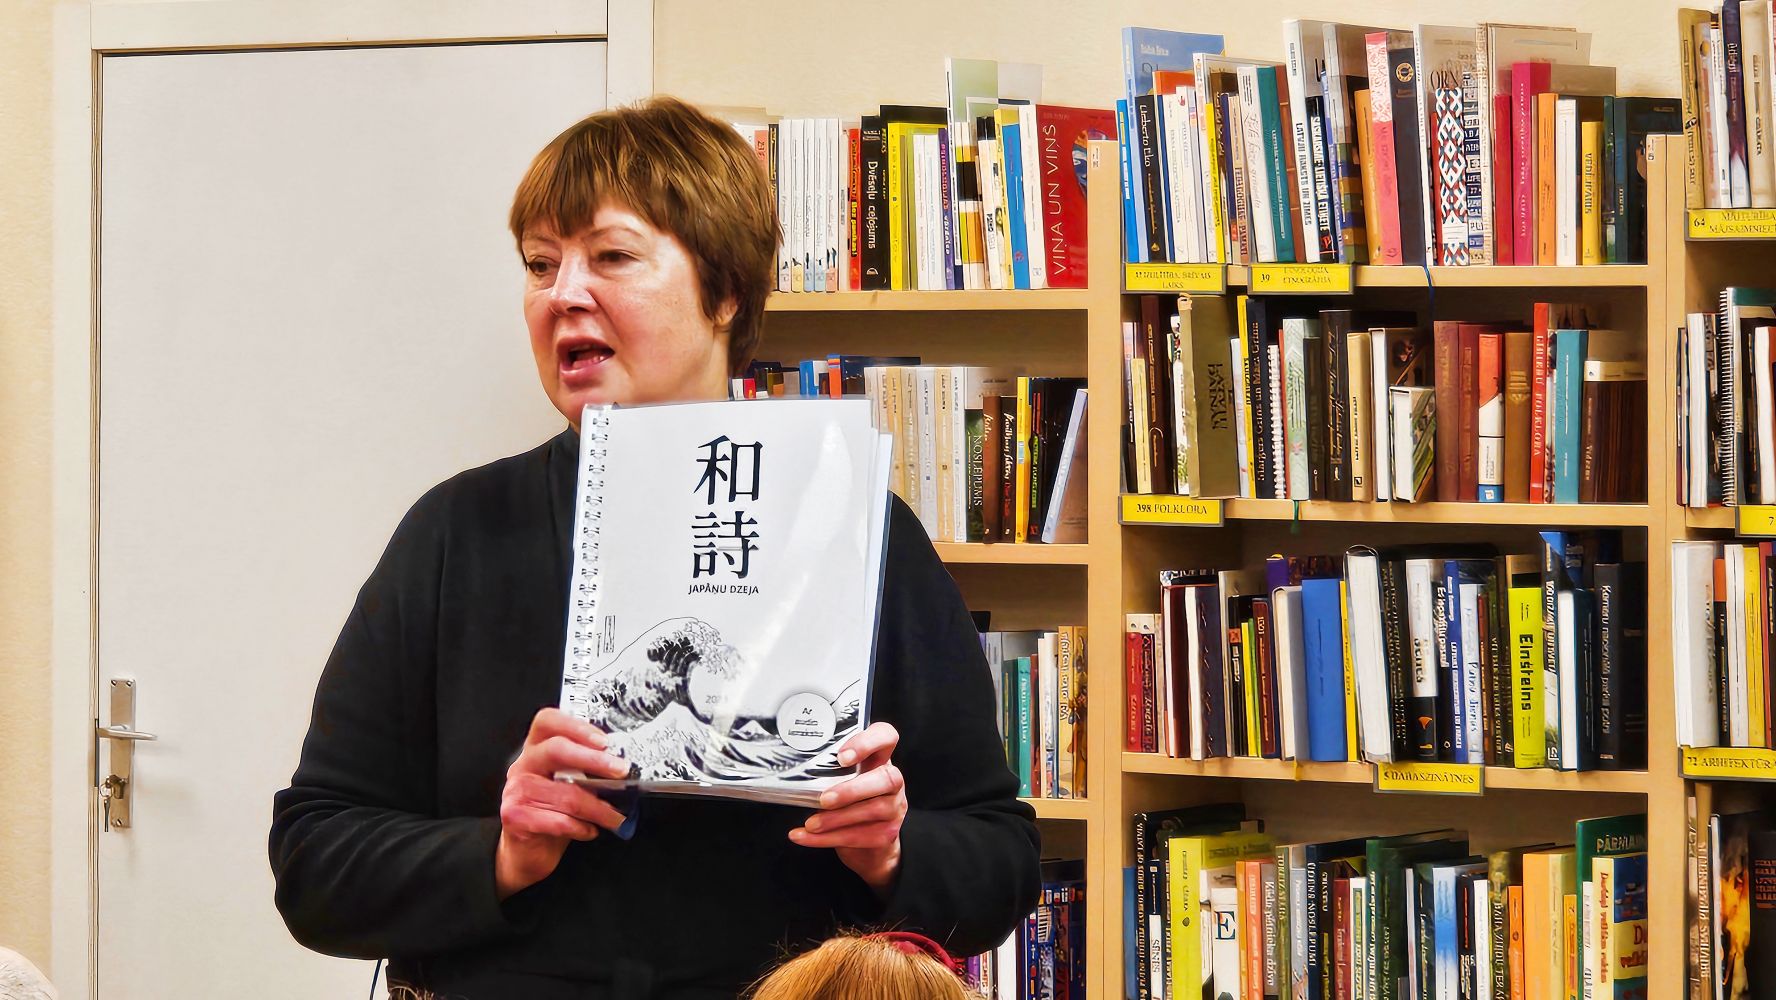 Žurnāliste un barikāžu aculieciniece Ilze Strenga stāsta par grāmatu "Japāņu dzeja"